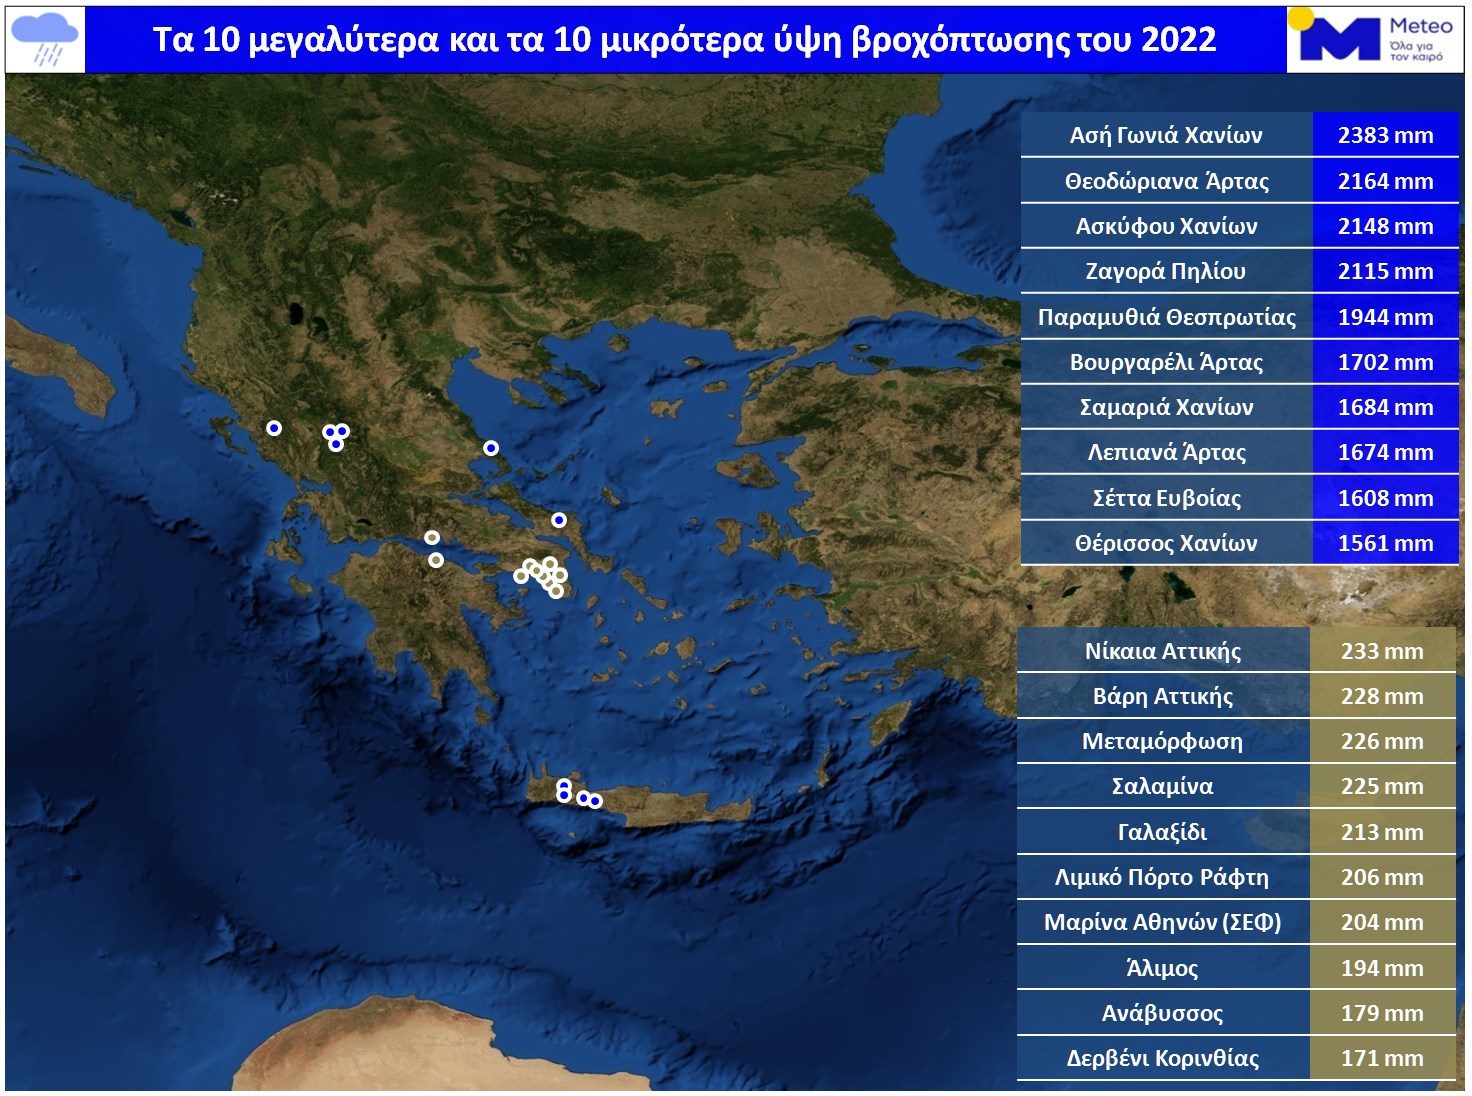 Τα μετεωρολογικά ρεκόρ του 2022 στην Ελλάδα